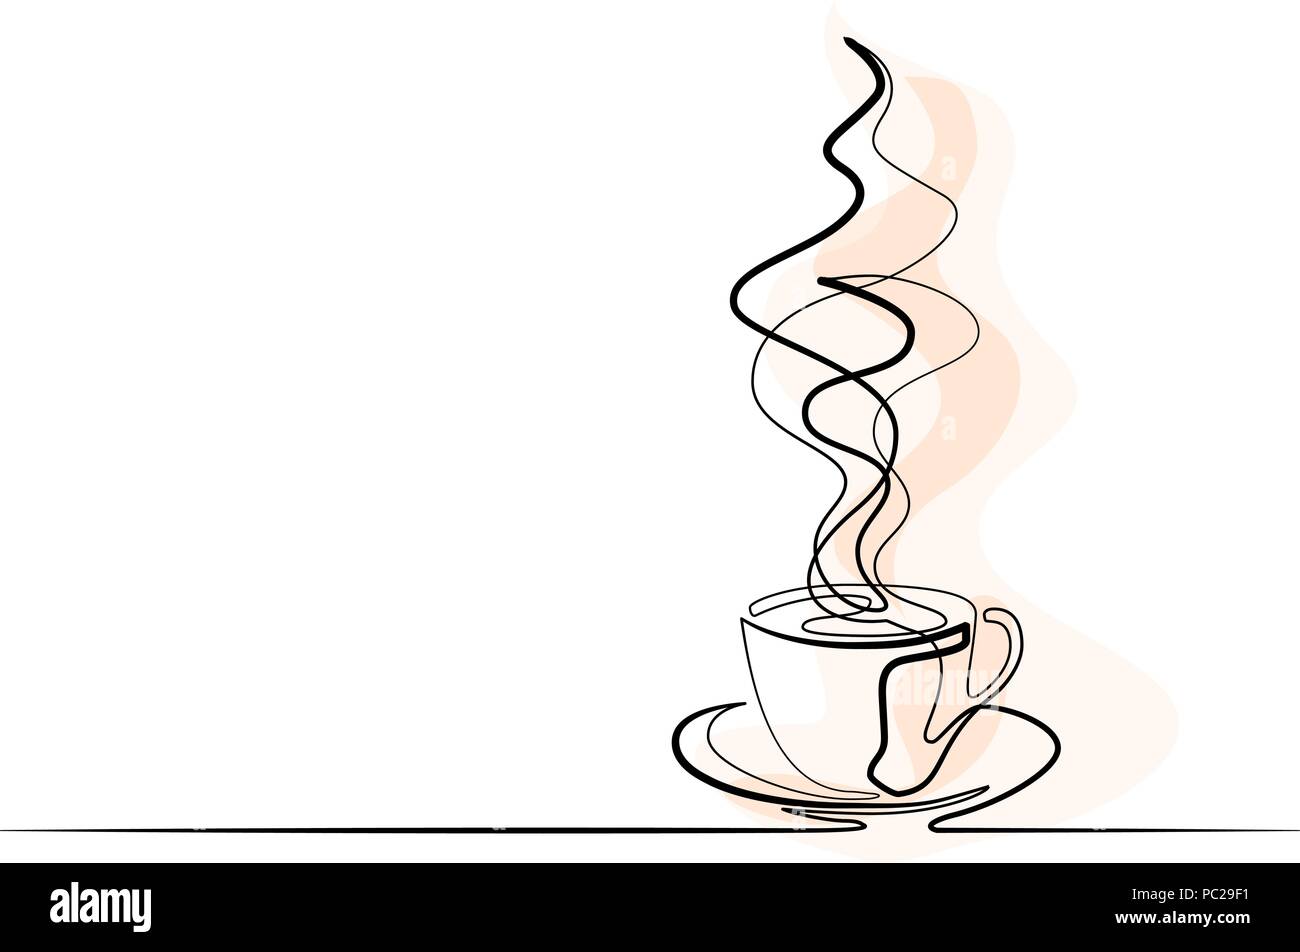 Continuo Di Una Linea Disegno Della Tazza Di Caffe Illustrazione Vettoriale Immagine E Vettoriale Alamy